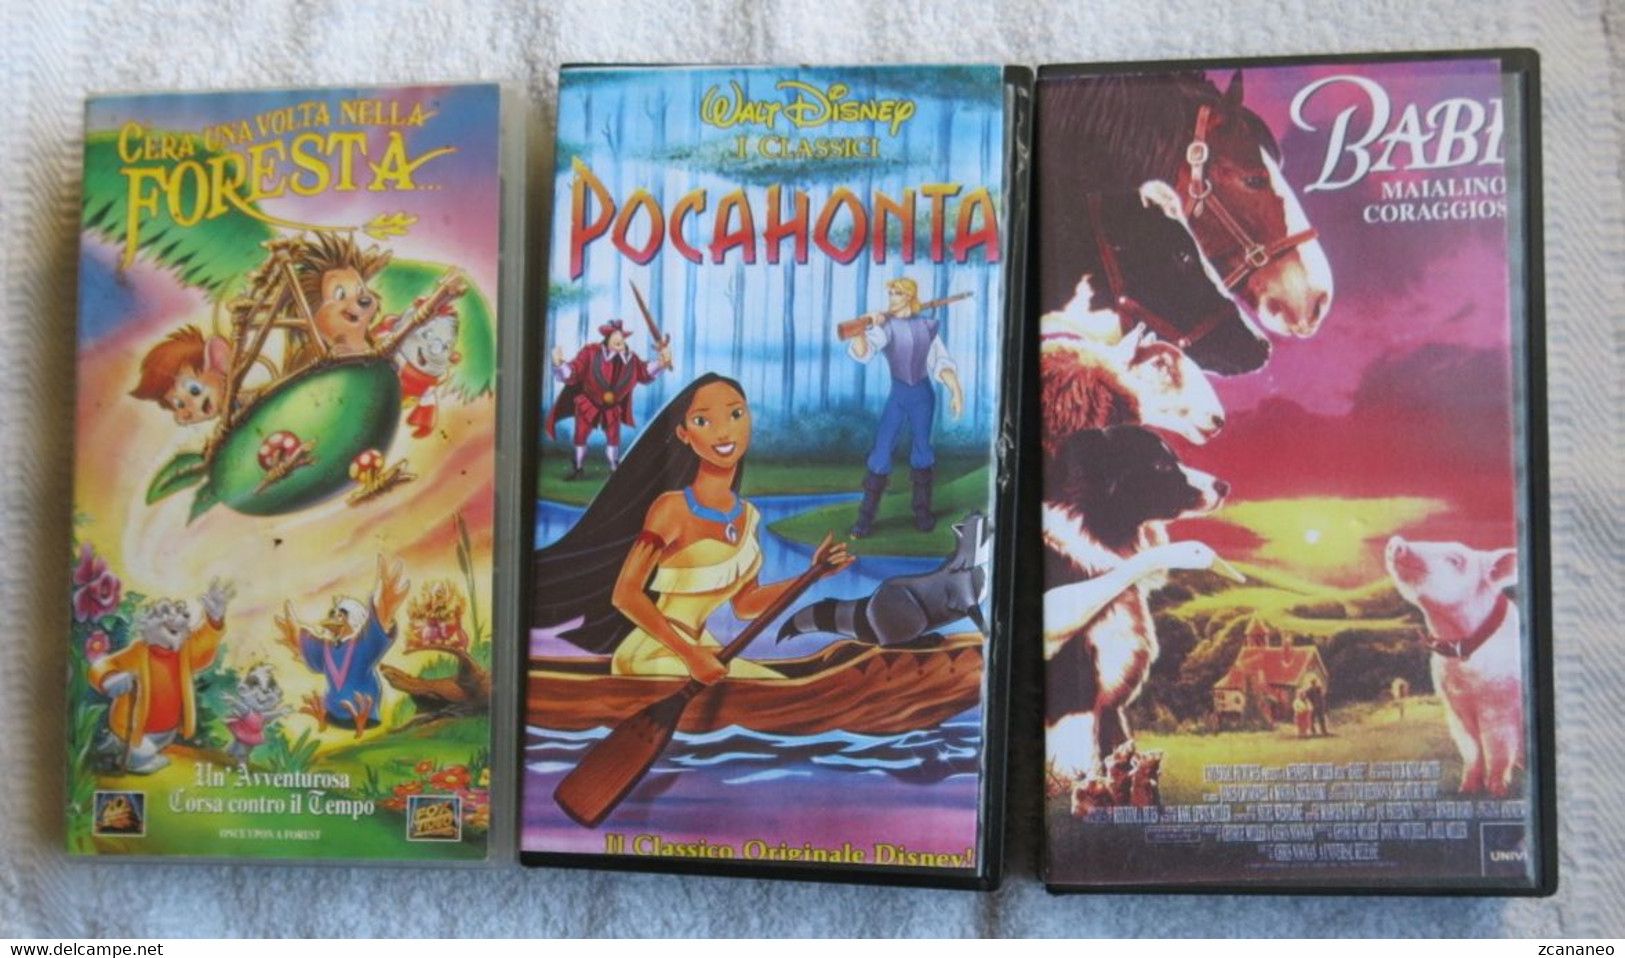 3 VHS CARTONI ANIMATI-C'ERA UNA VOLTA NELLA FORESTA-POCAHONTA-BABE MAIALINO CORAGGIOSO - - Cartoons